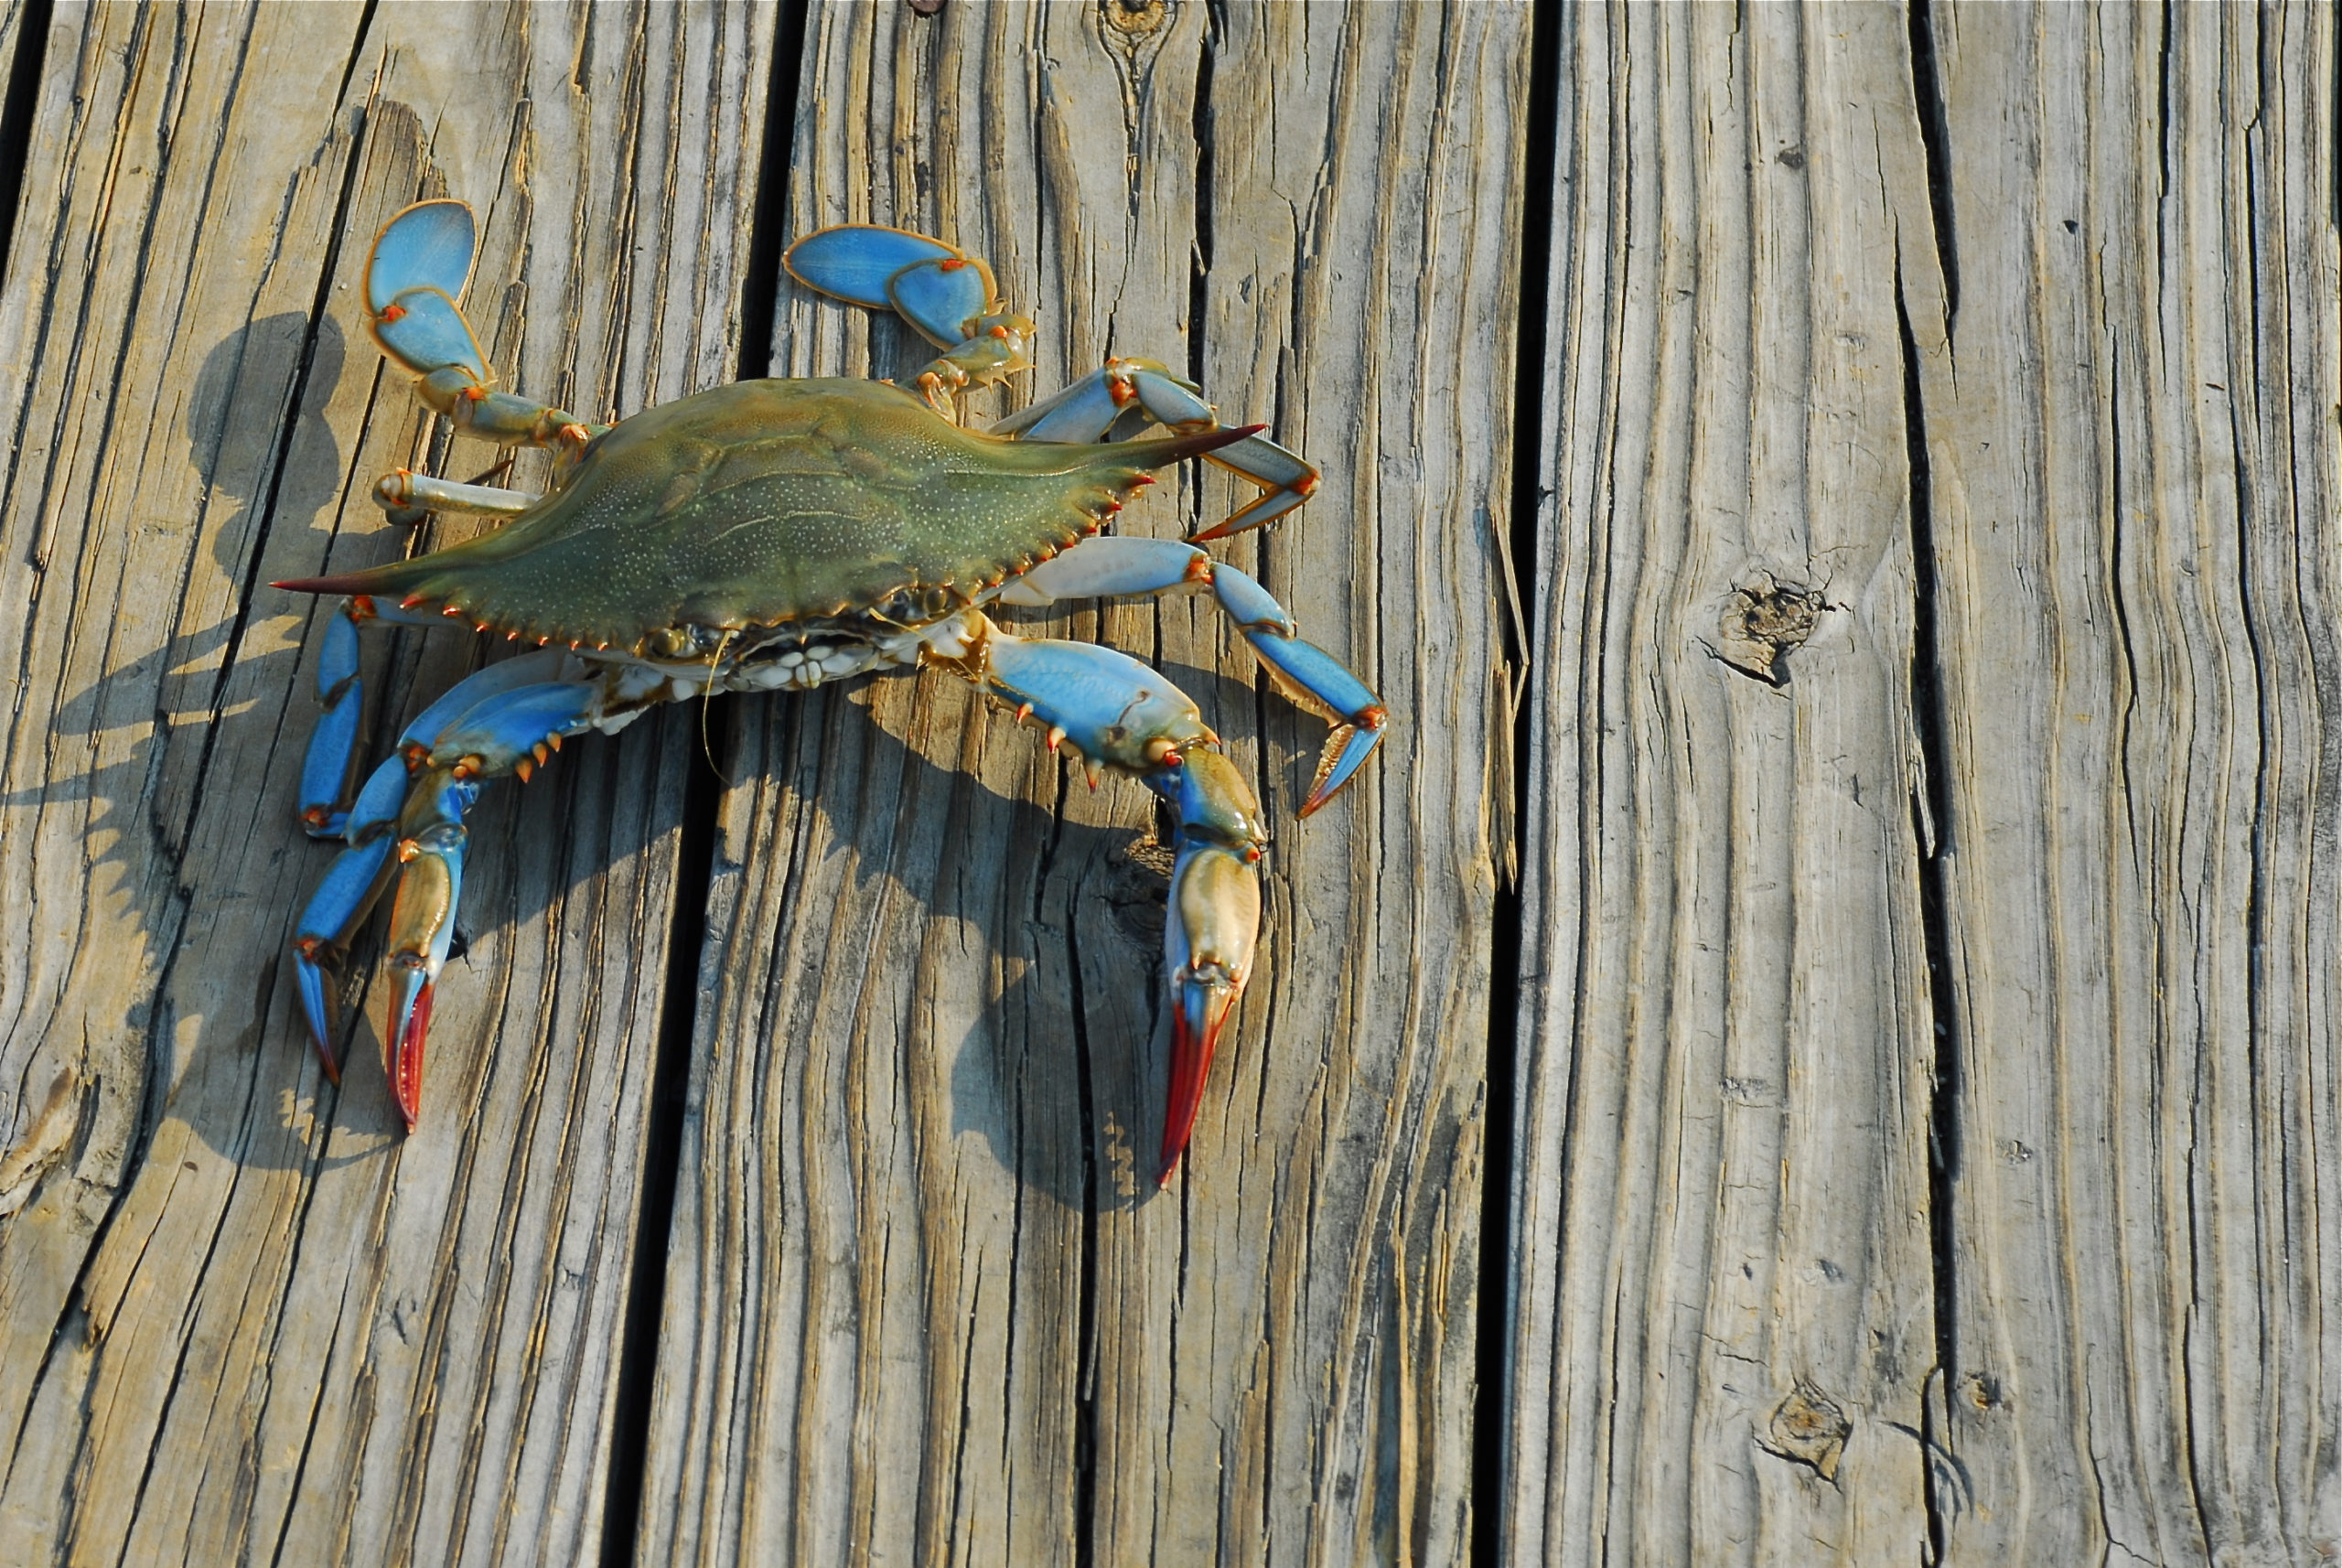 A blue crab.